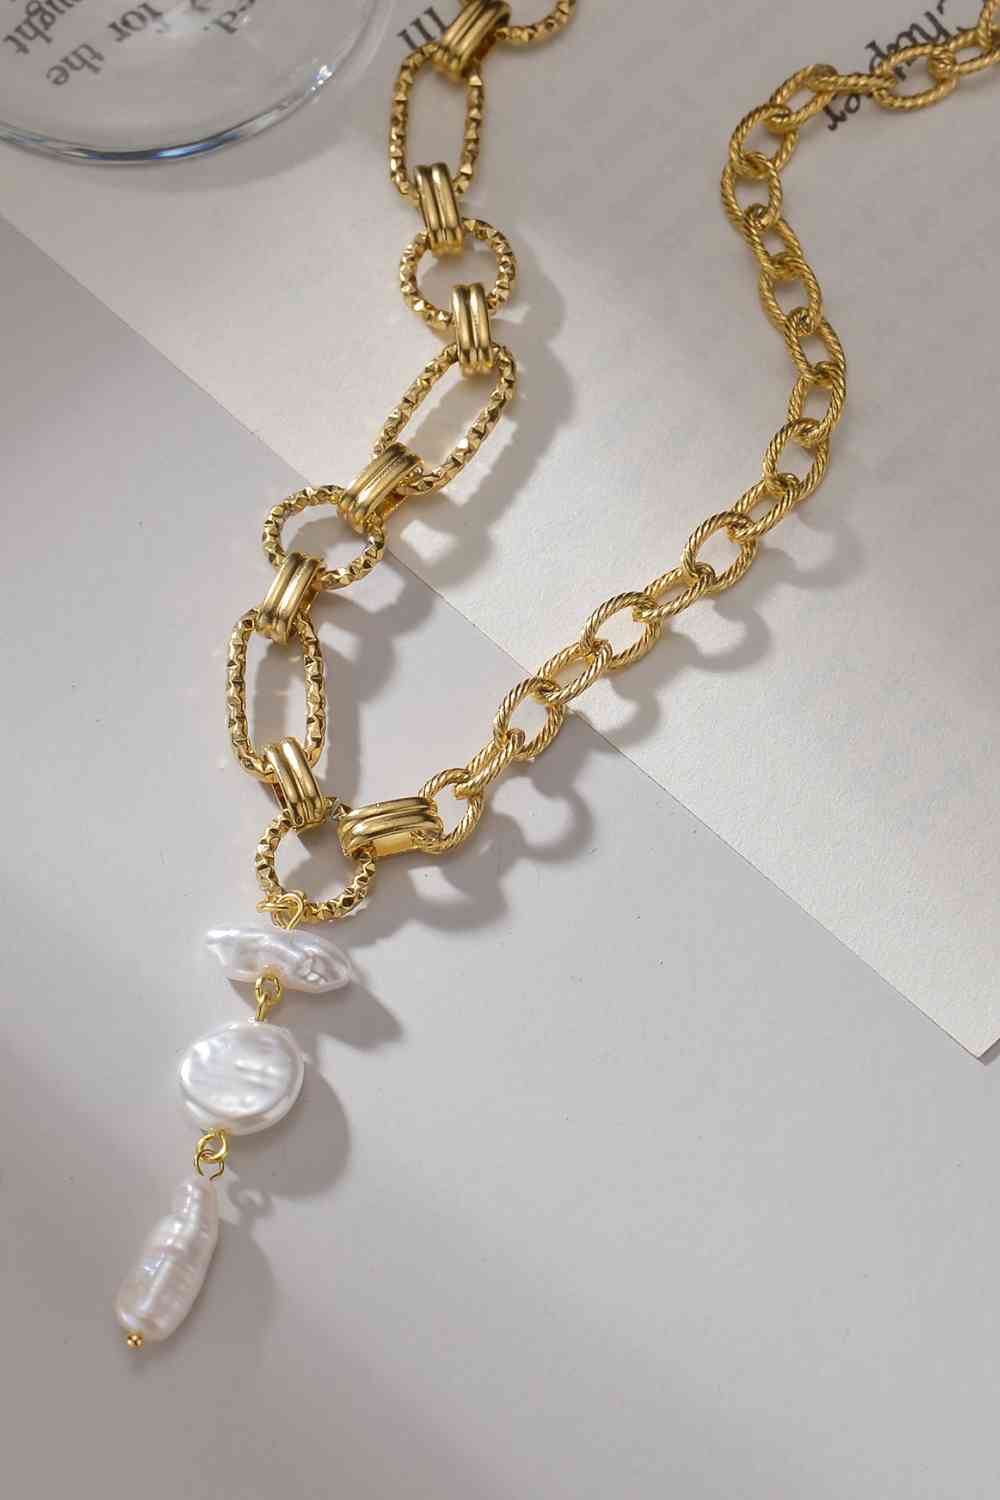 Halskette mit Perlenanhänger aus Edelstahl